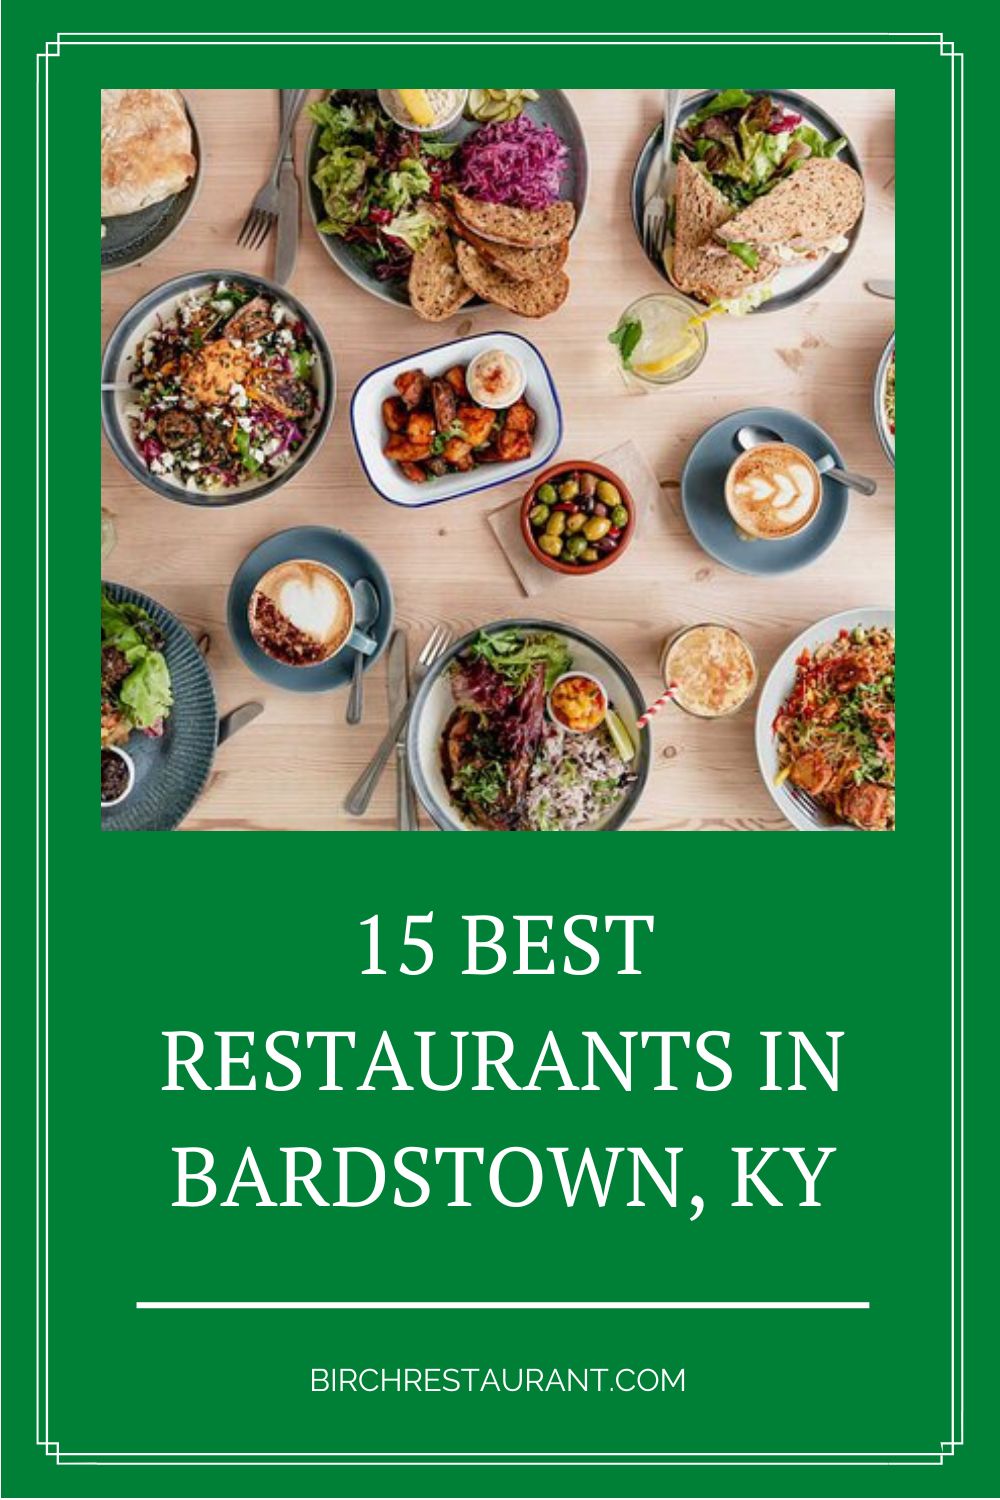 Best Restaurants in Bardstown